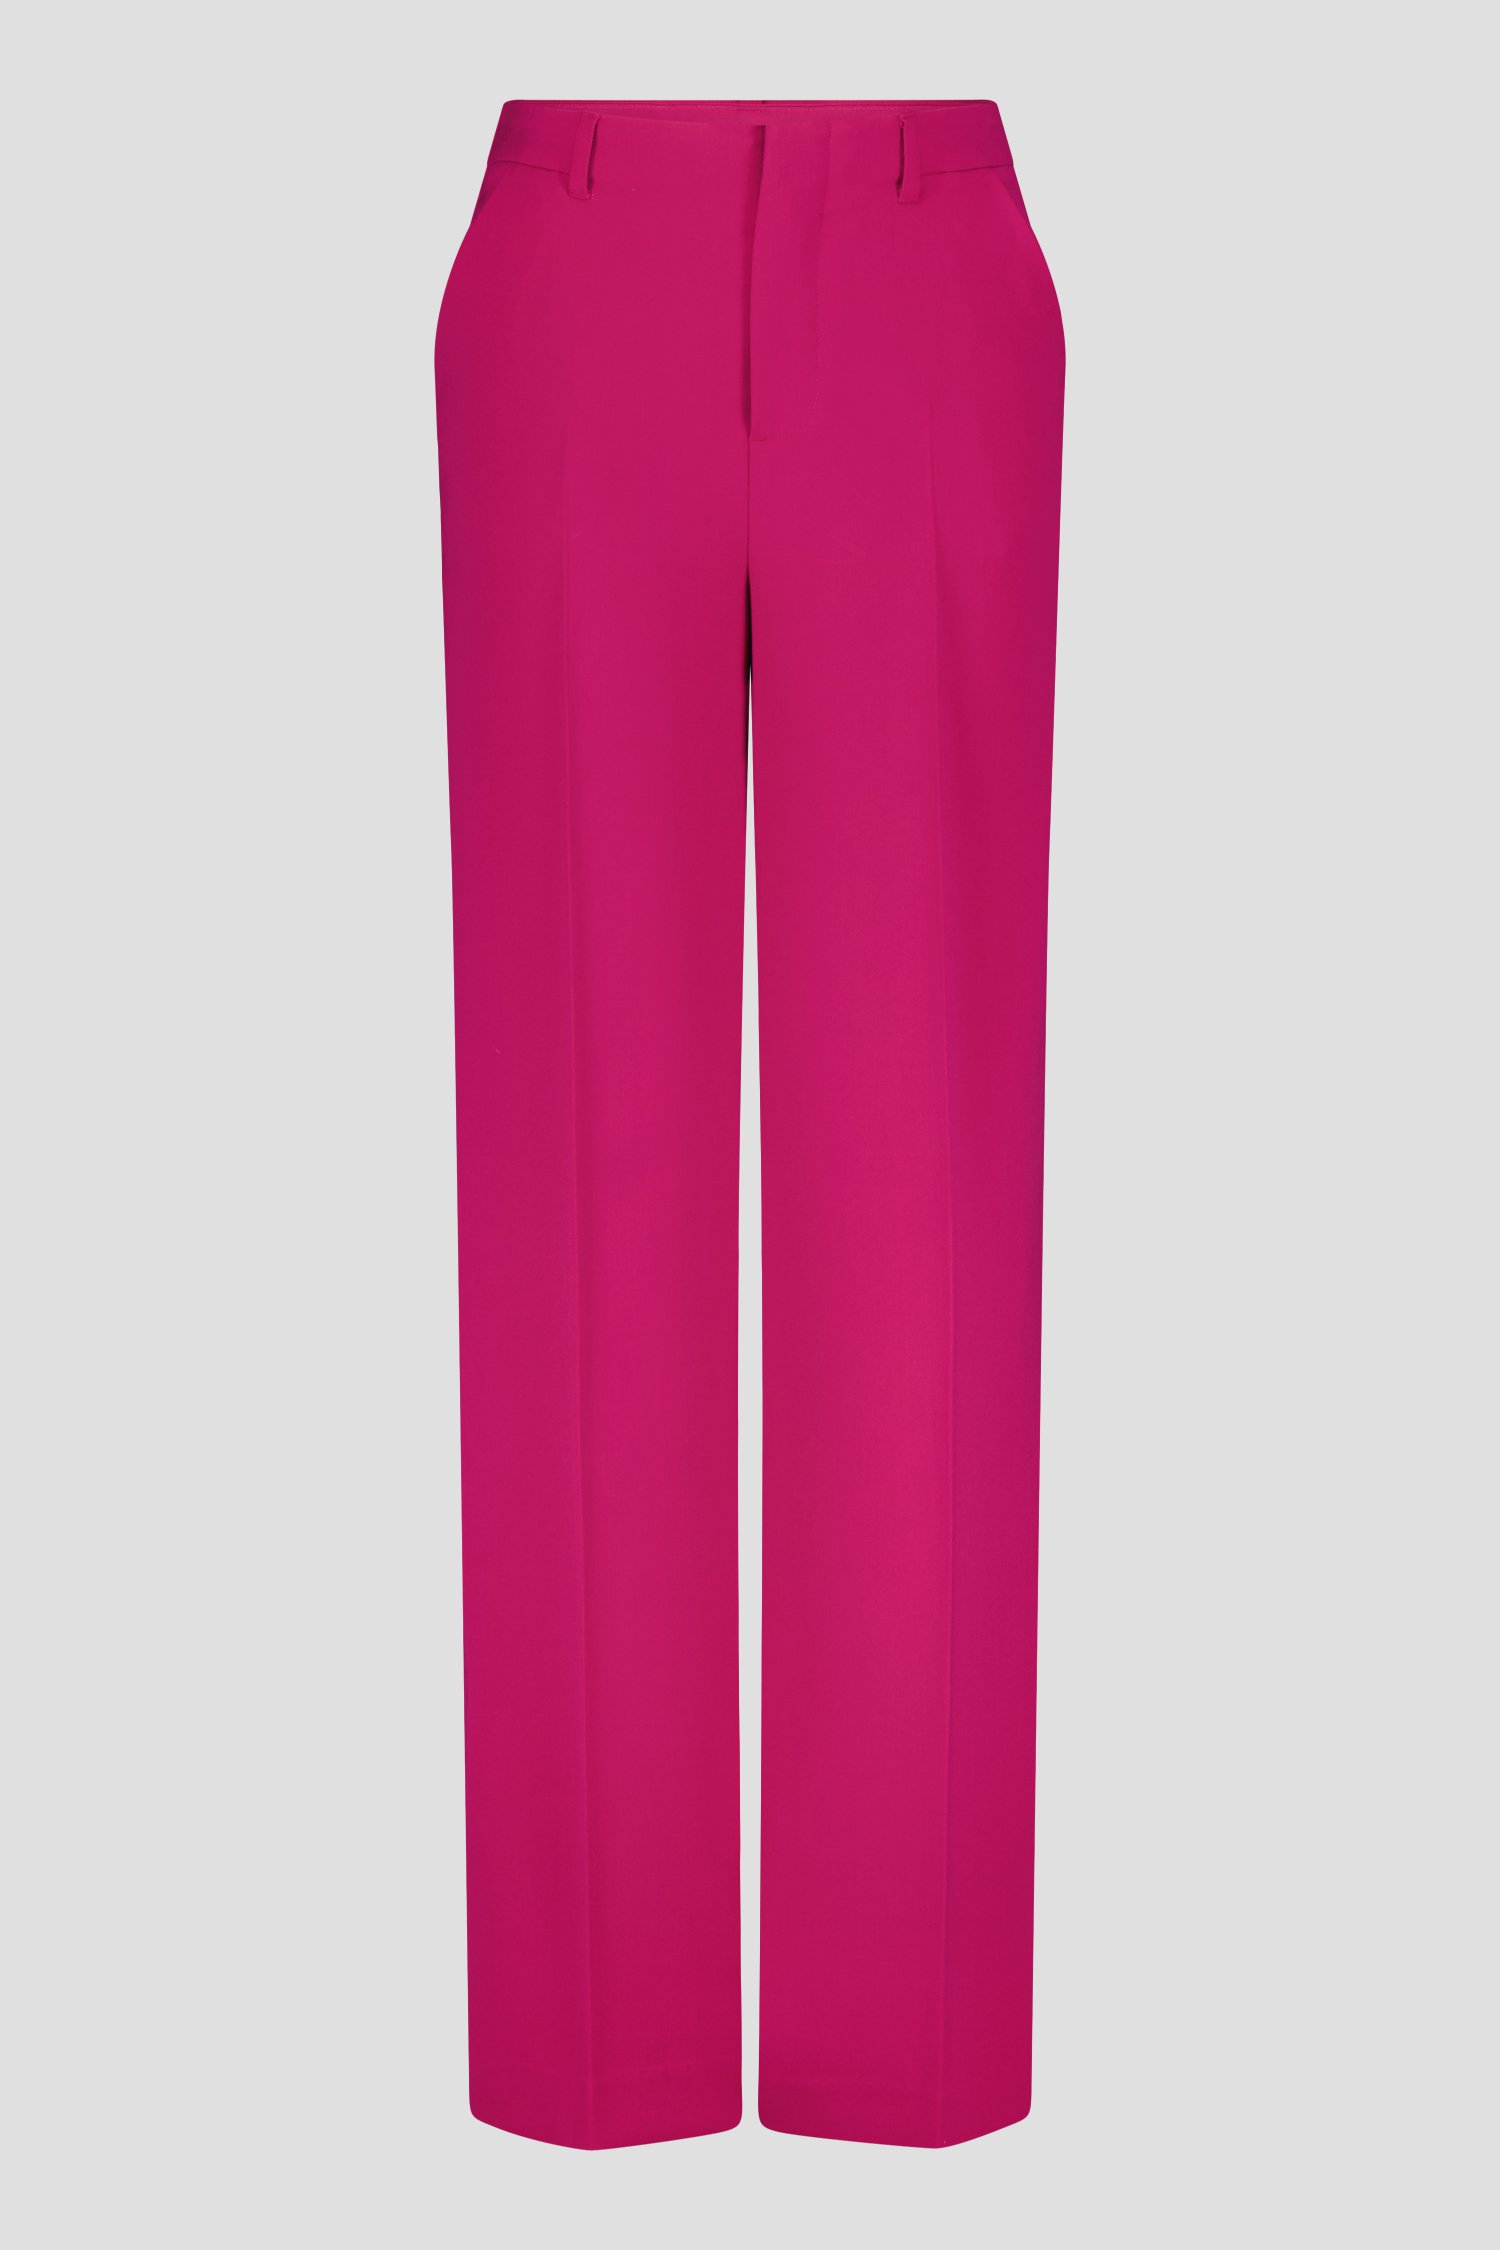 Pantalon large fuchsia de D'Auvry pour Femmes